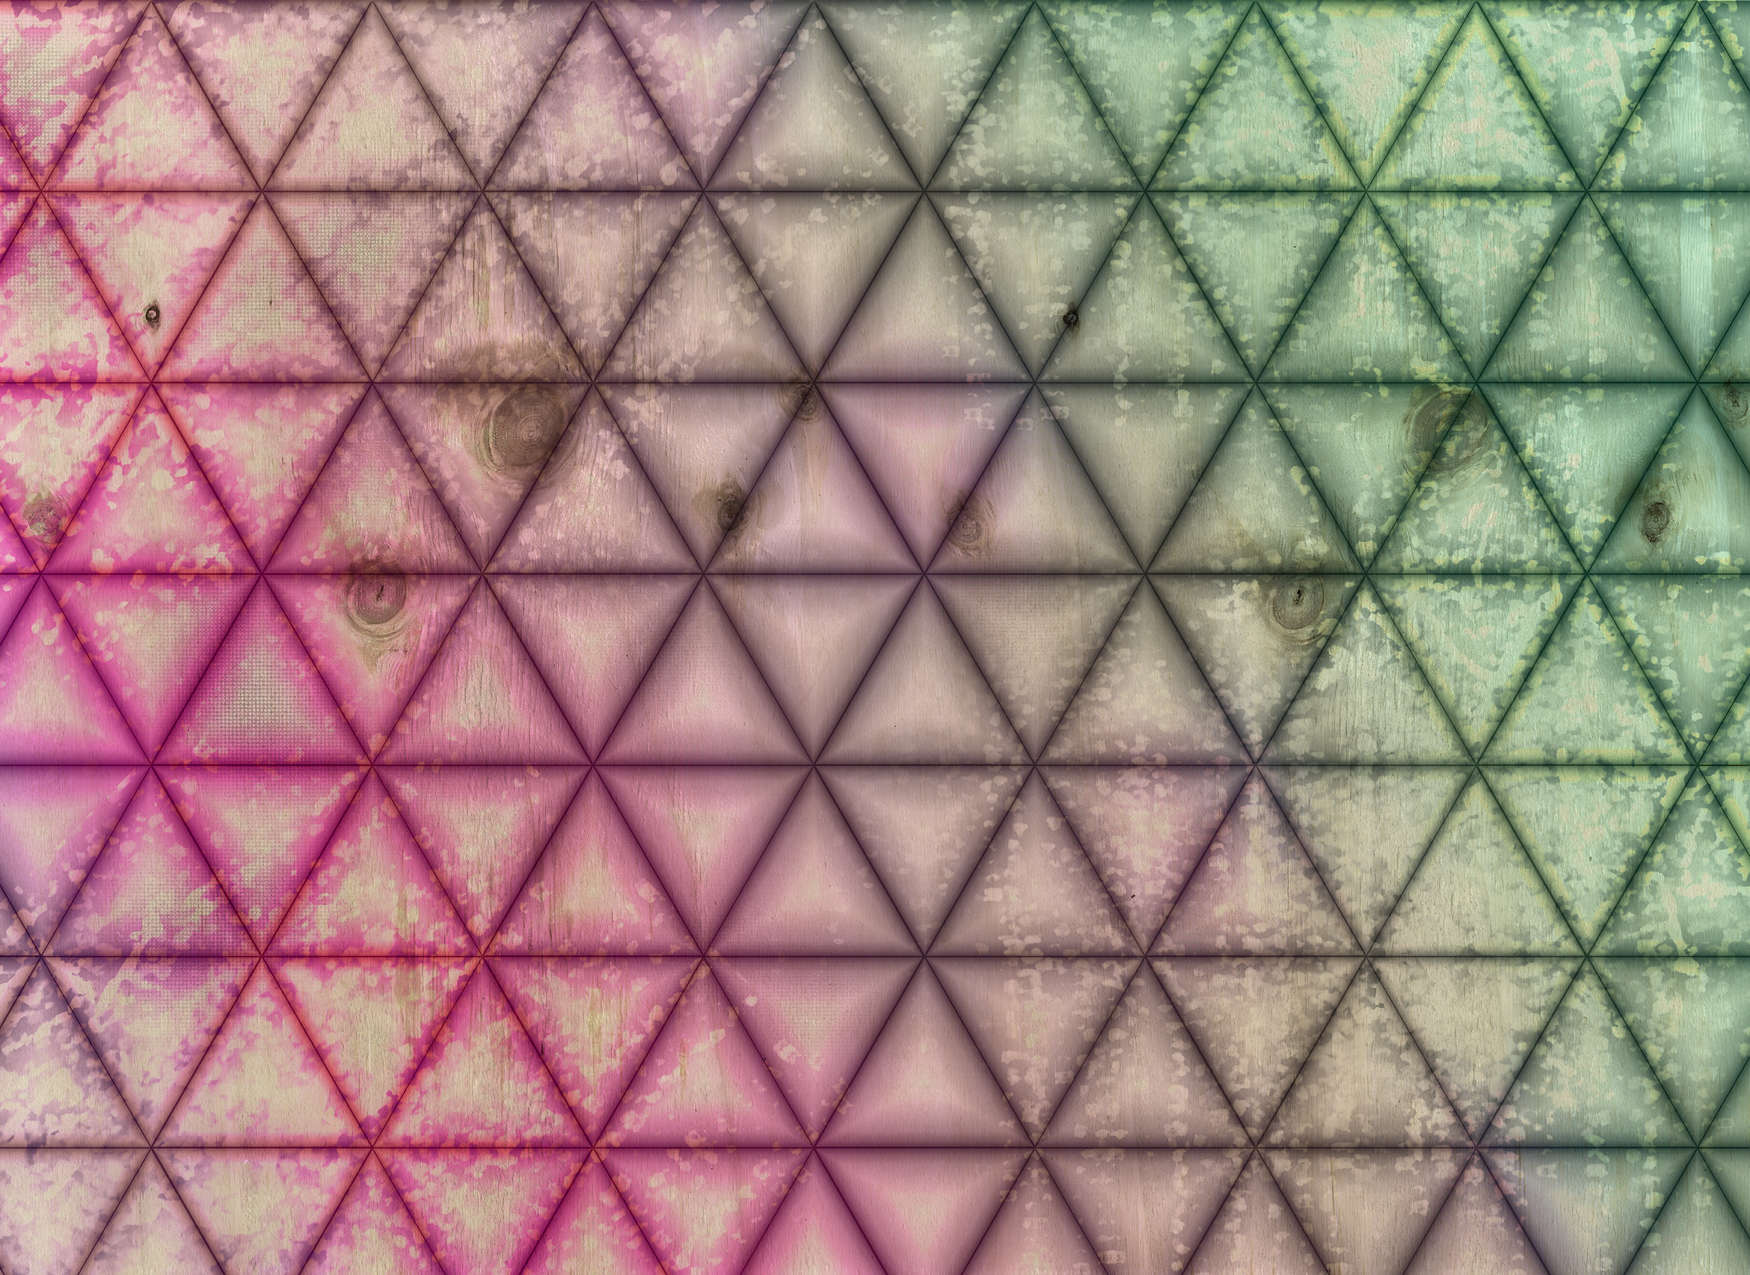             Digital behang geometrisch driehoekpatroon in houtlook - groen, roze
        